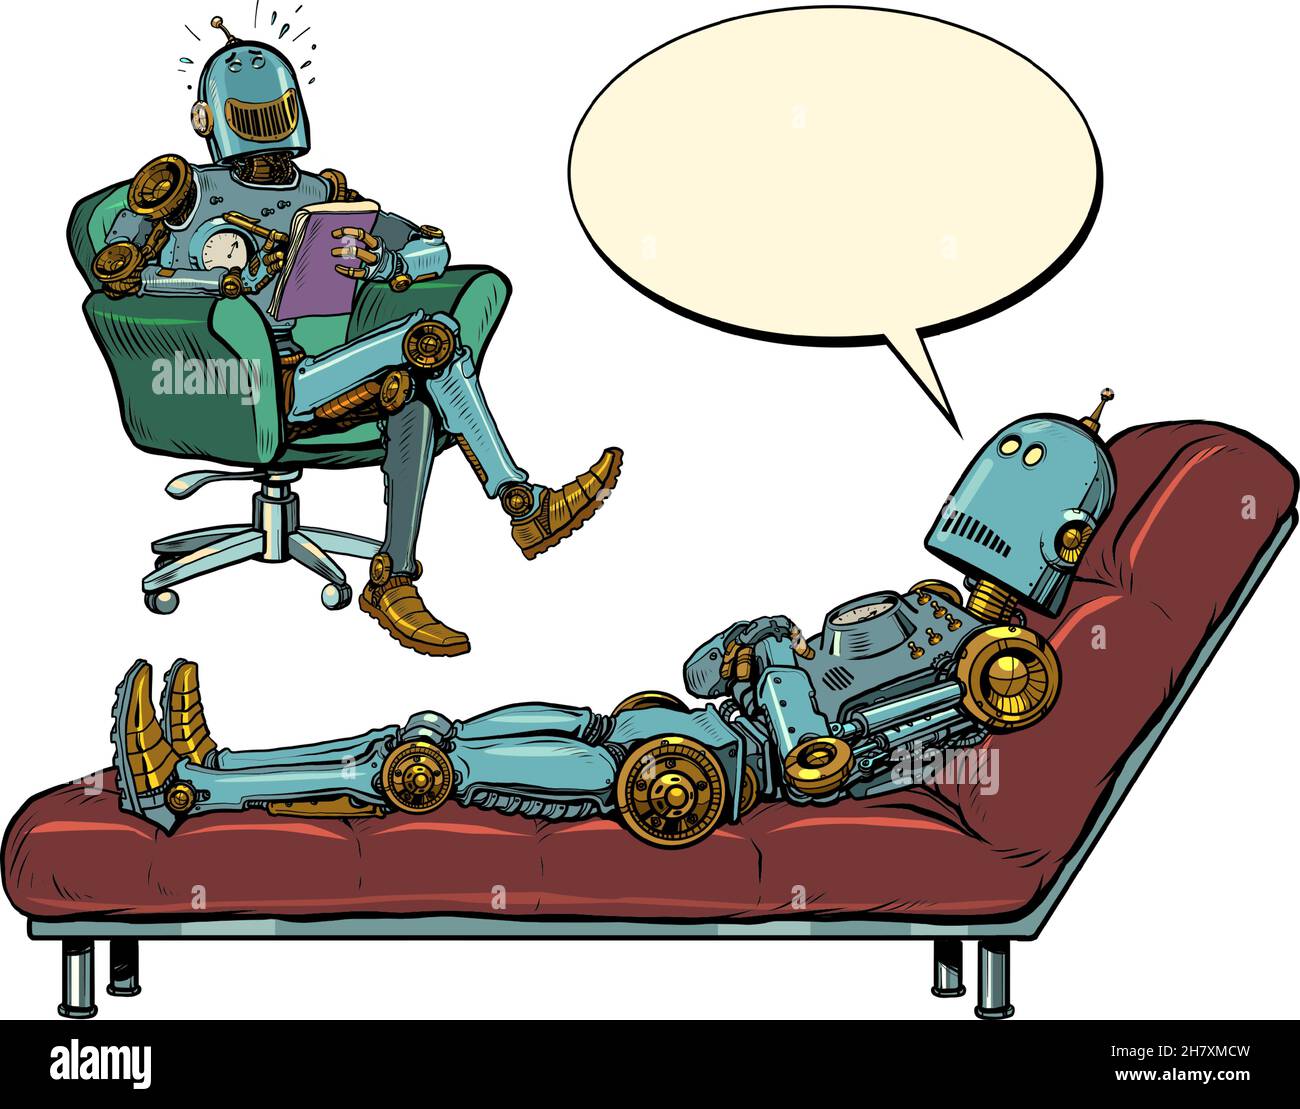 Un robot psychothérapeute lors d'une séance de psychothérapie avec un patient, écoute le robot, rit et prend des notes dans un bloc-notes Illustration de Vecteur